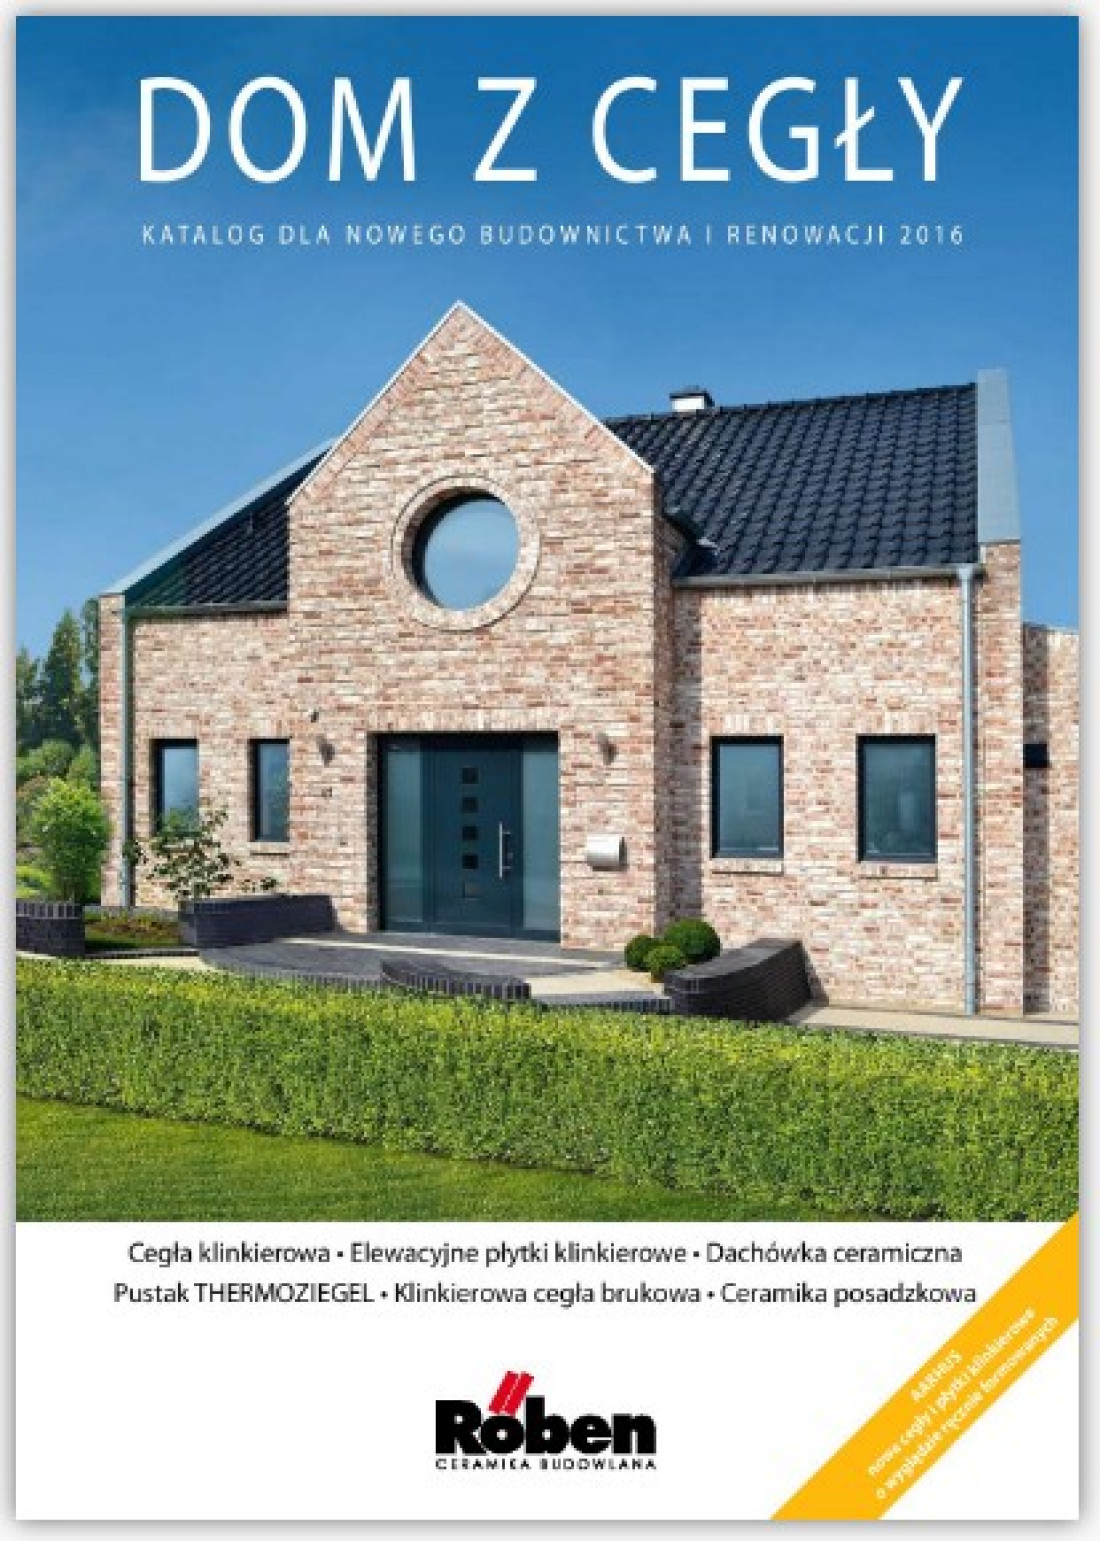 Nowy katalog Dom z cegły 2016 marki Roben